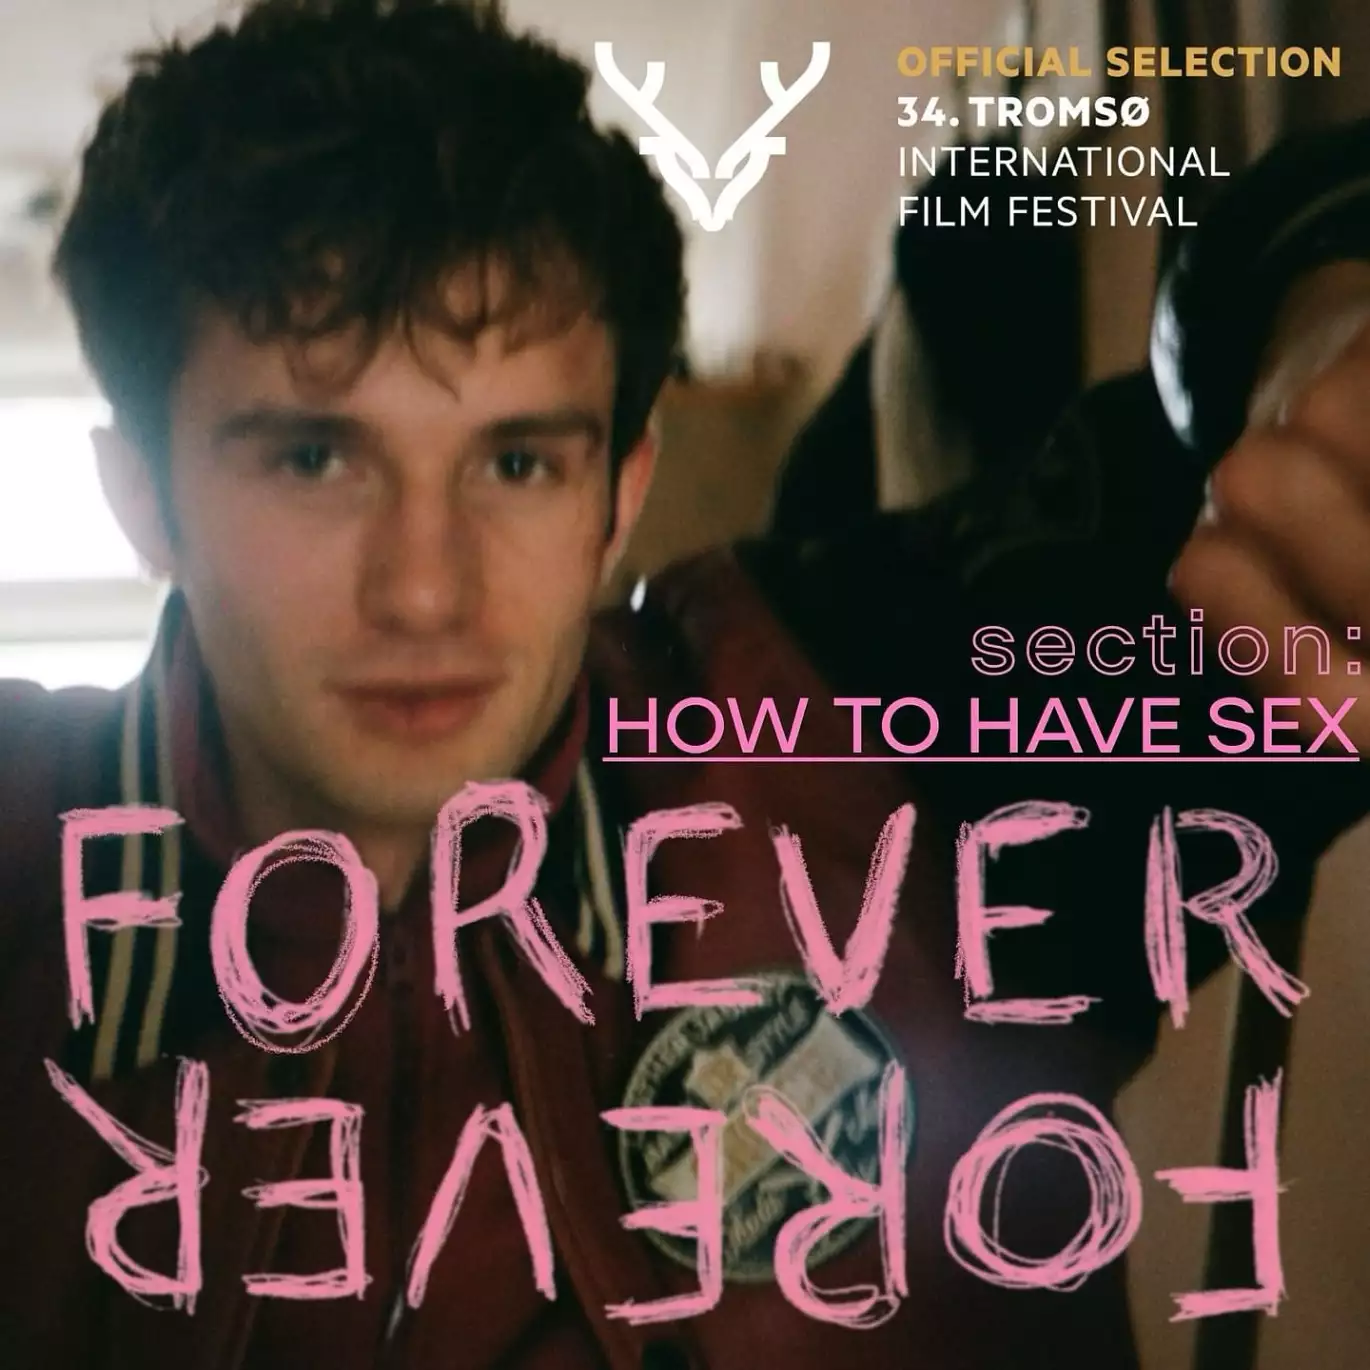 Фільм Анни Бурячкової «Назавжди-назавжди» візьме участь у міжнародному кінофестивалі у Тромсе в секції «Як займатися сексом»